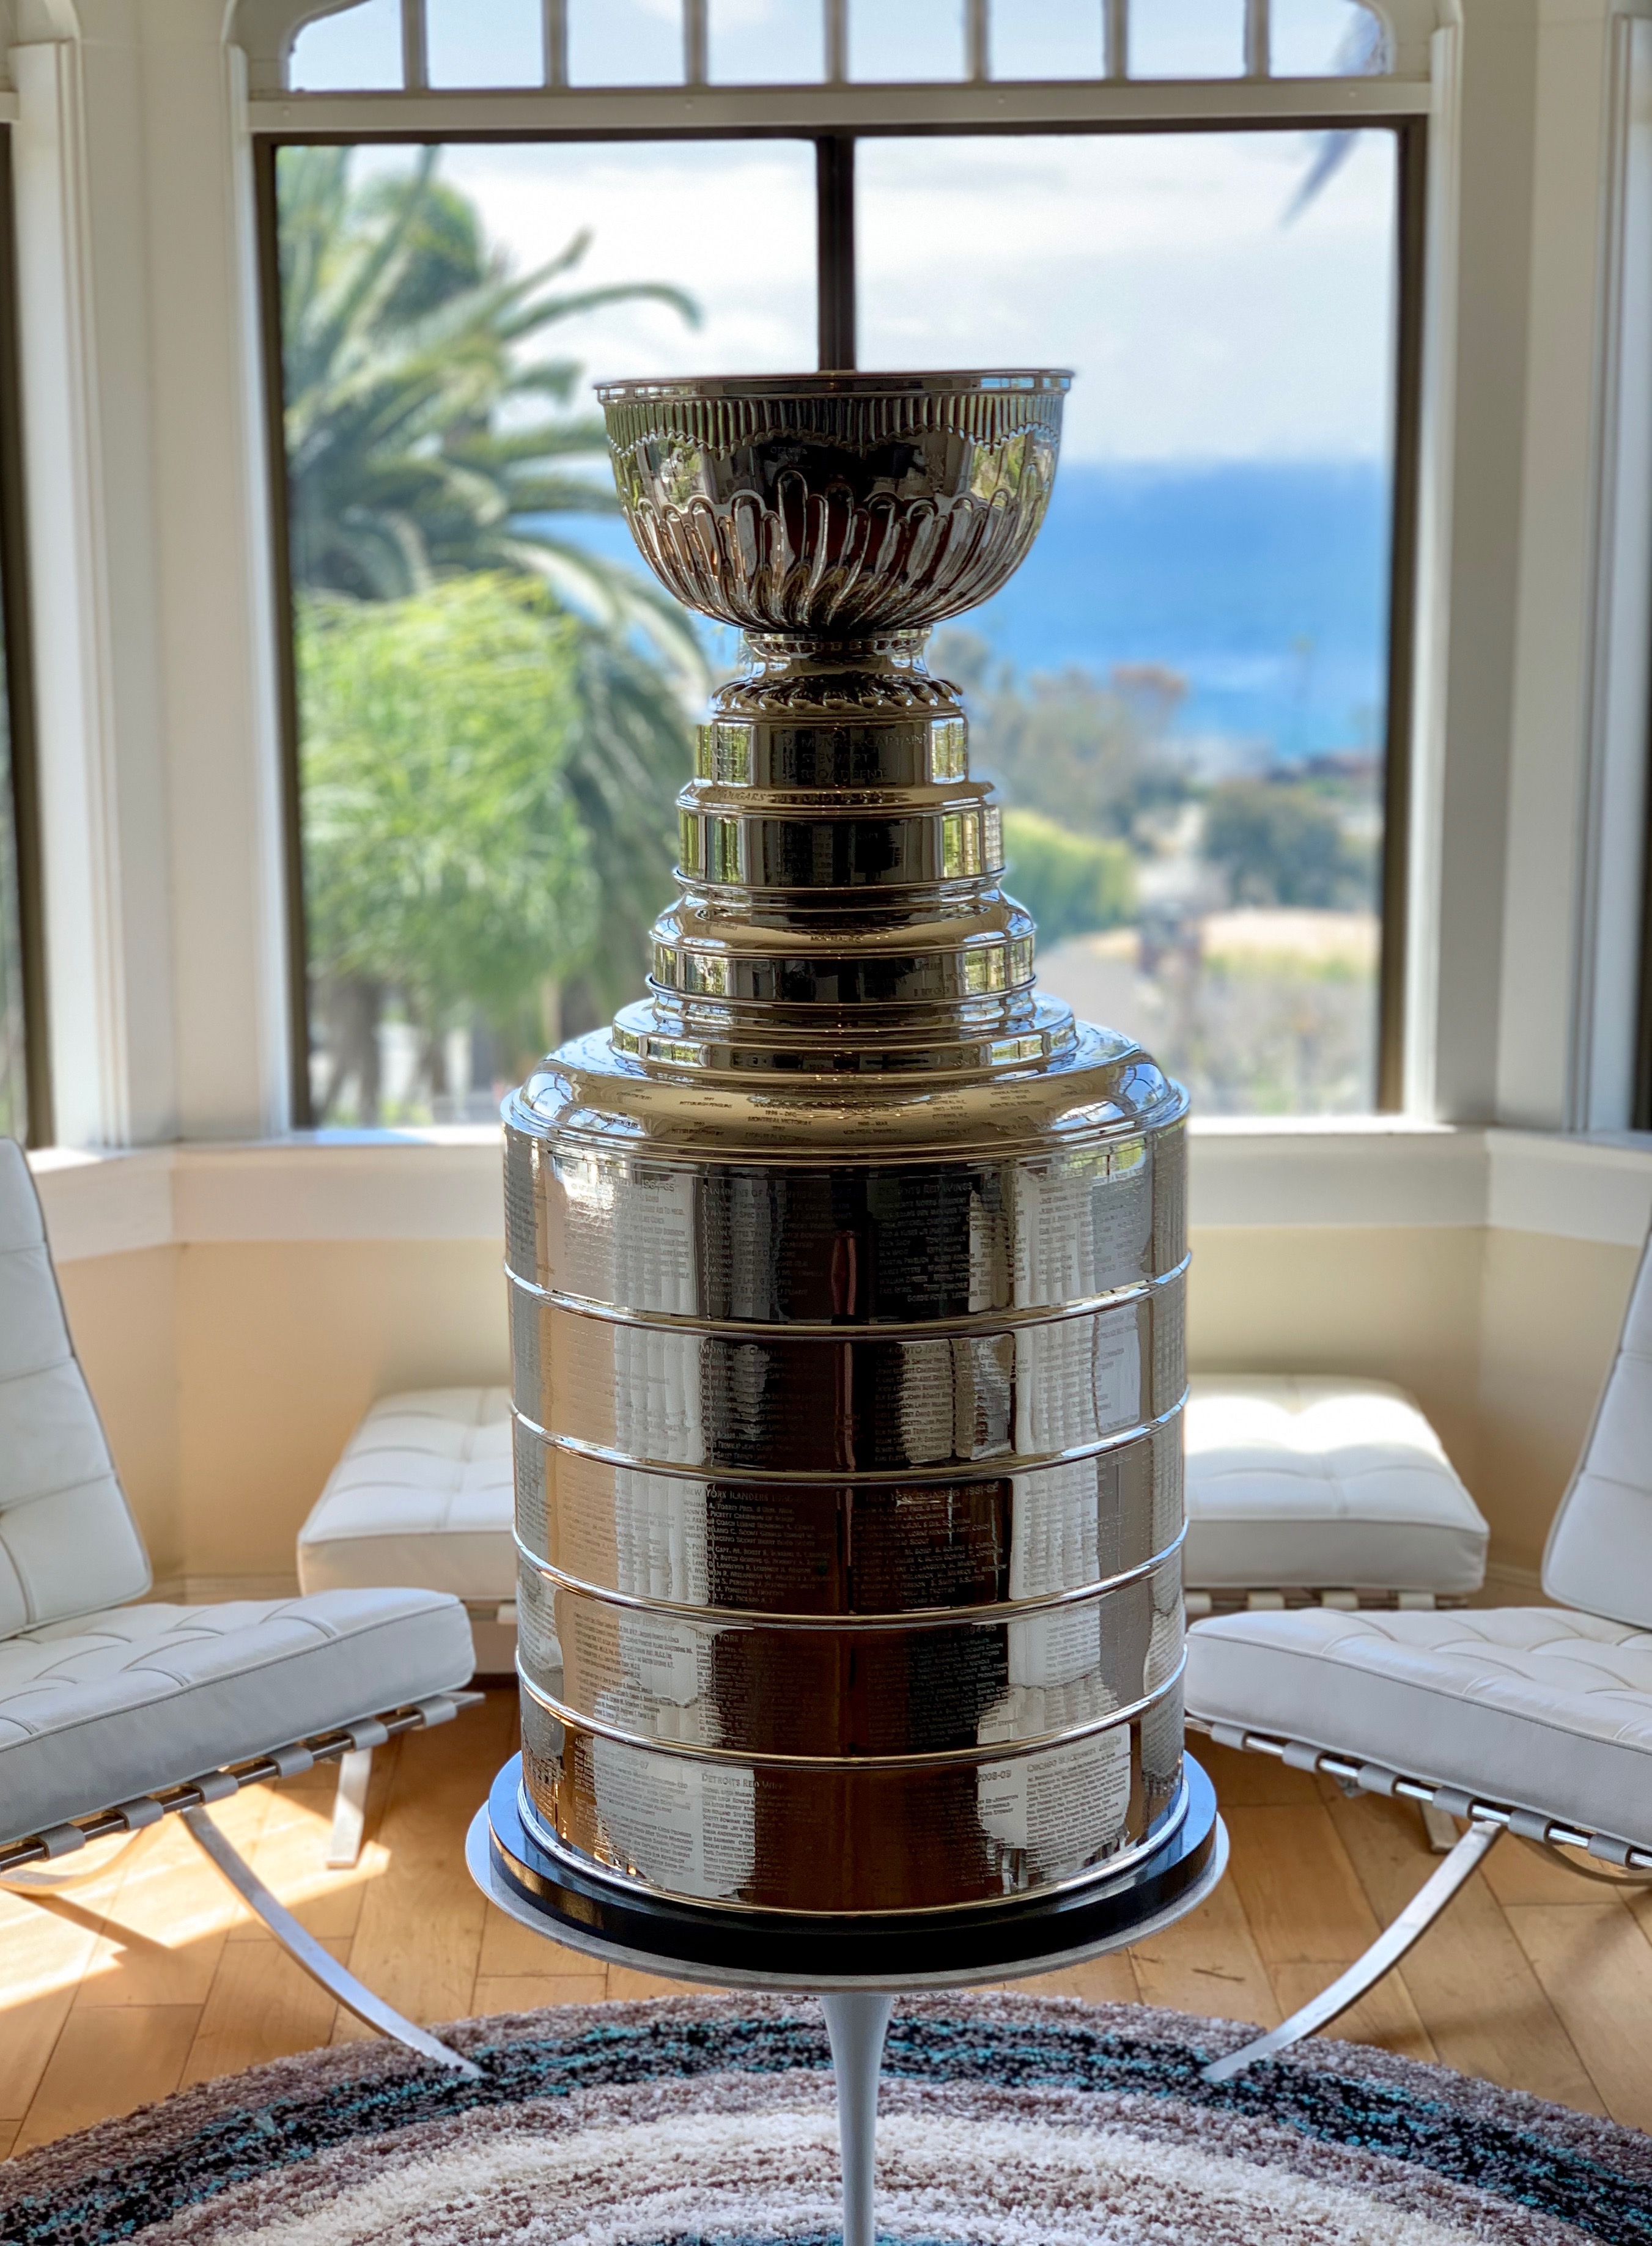 Stanley Cup Trophyclone